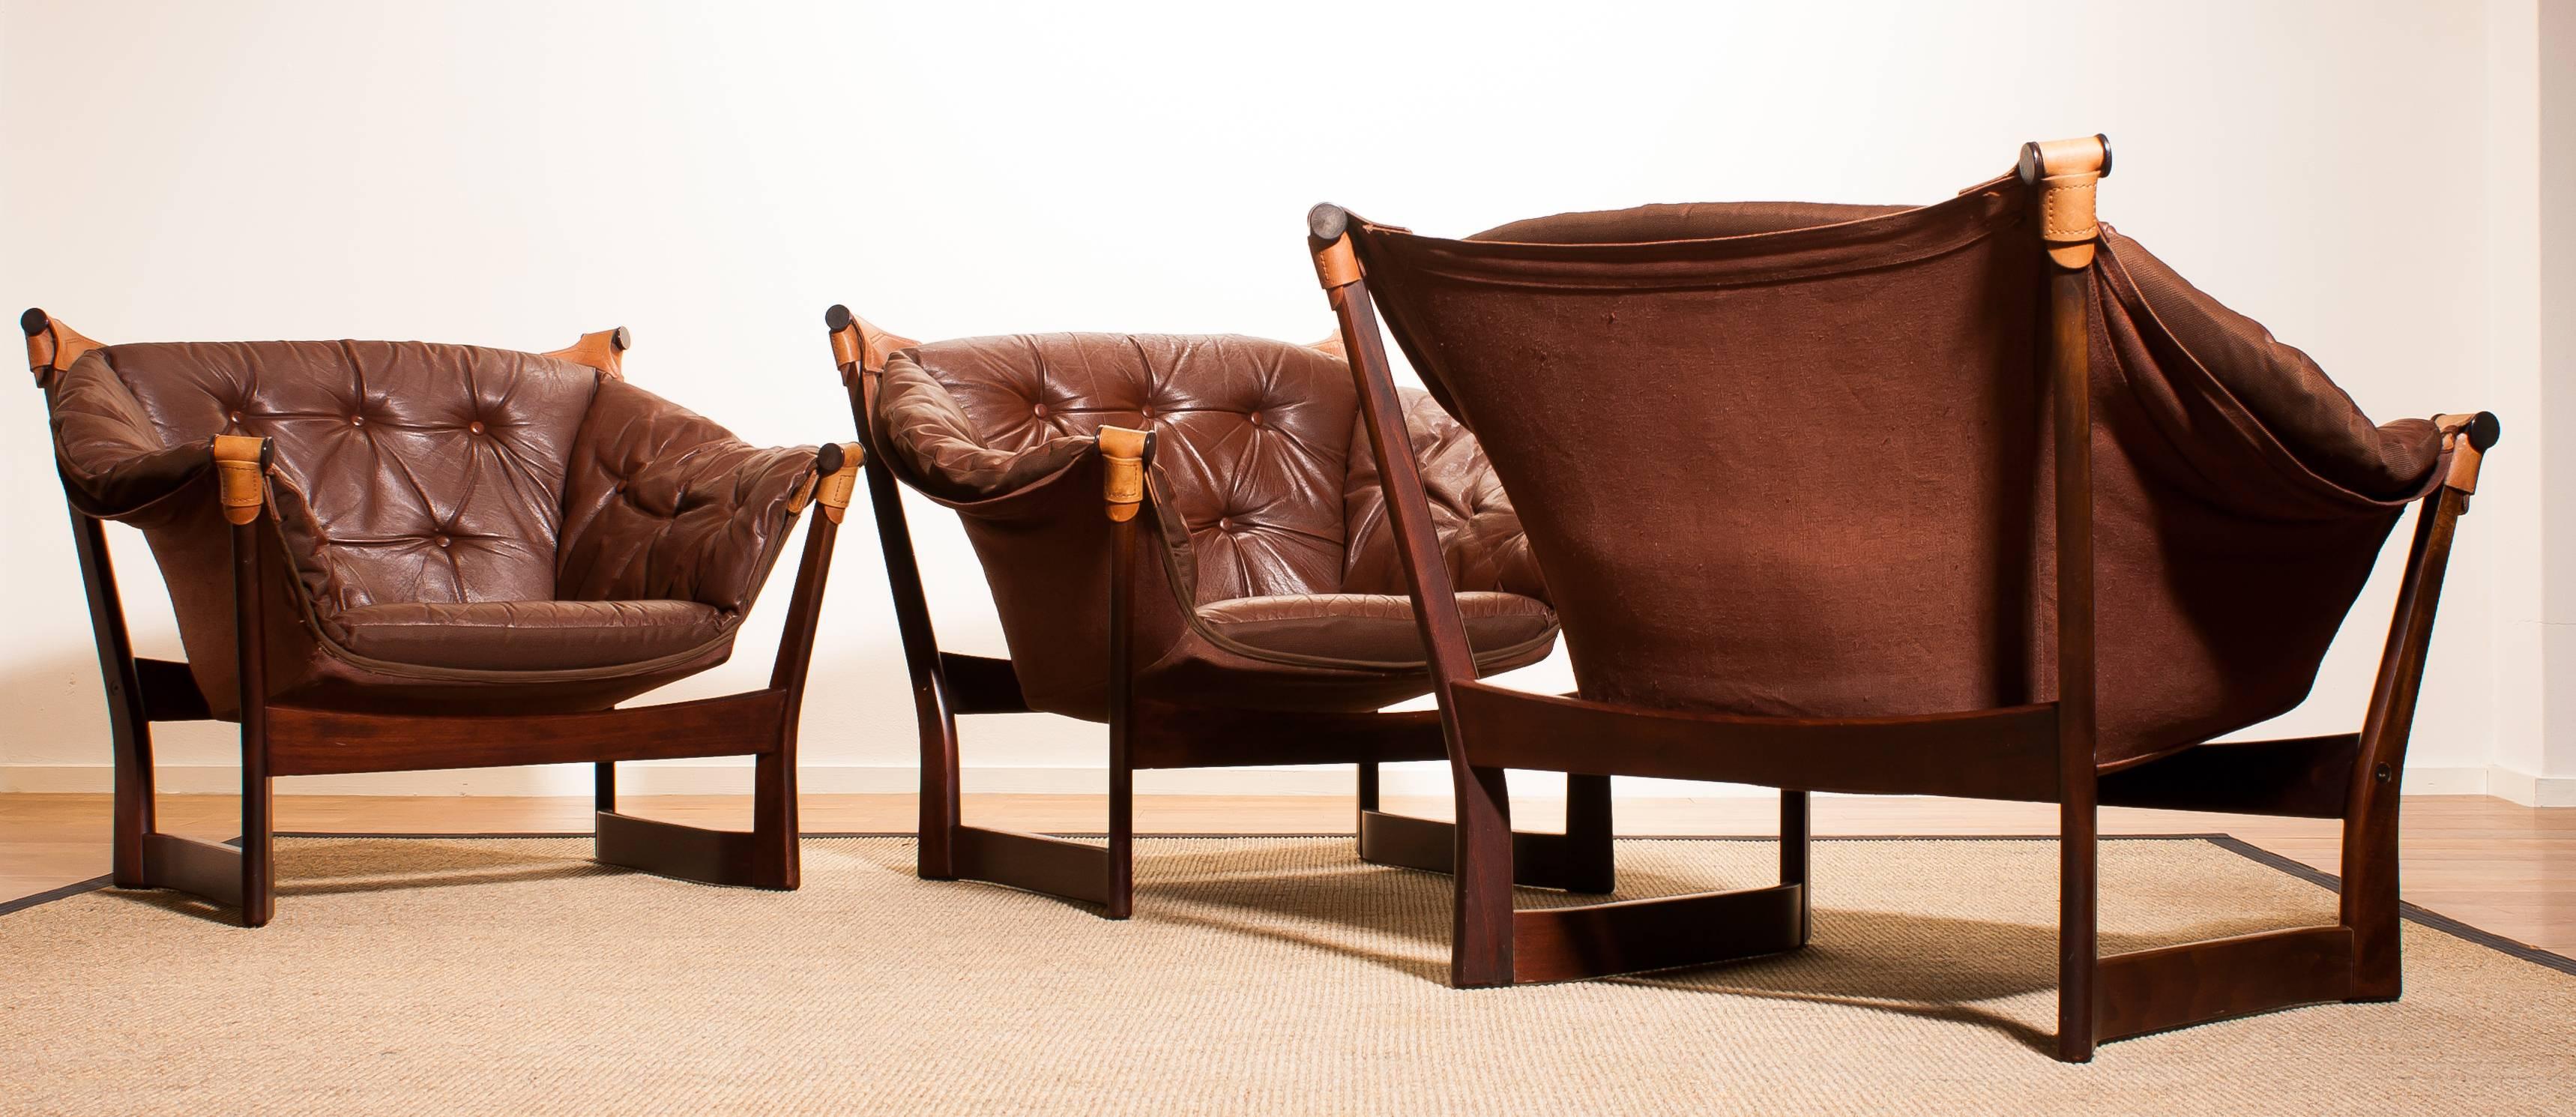 1950s, Teak and Leather Set 'Trega' Chairs by Tormod Alnaes for Sørliemøbler 2